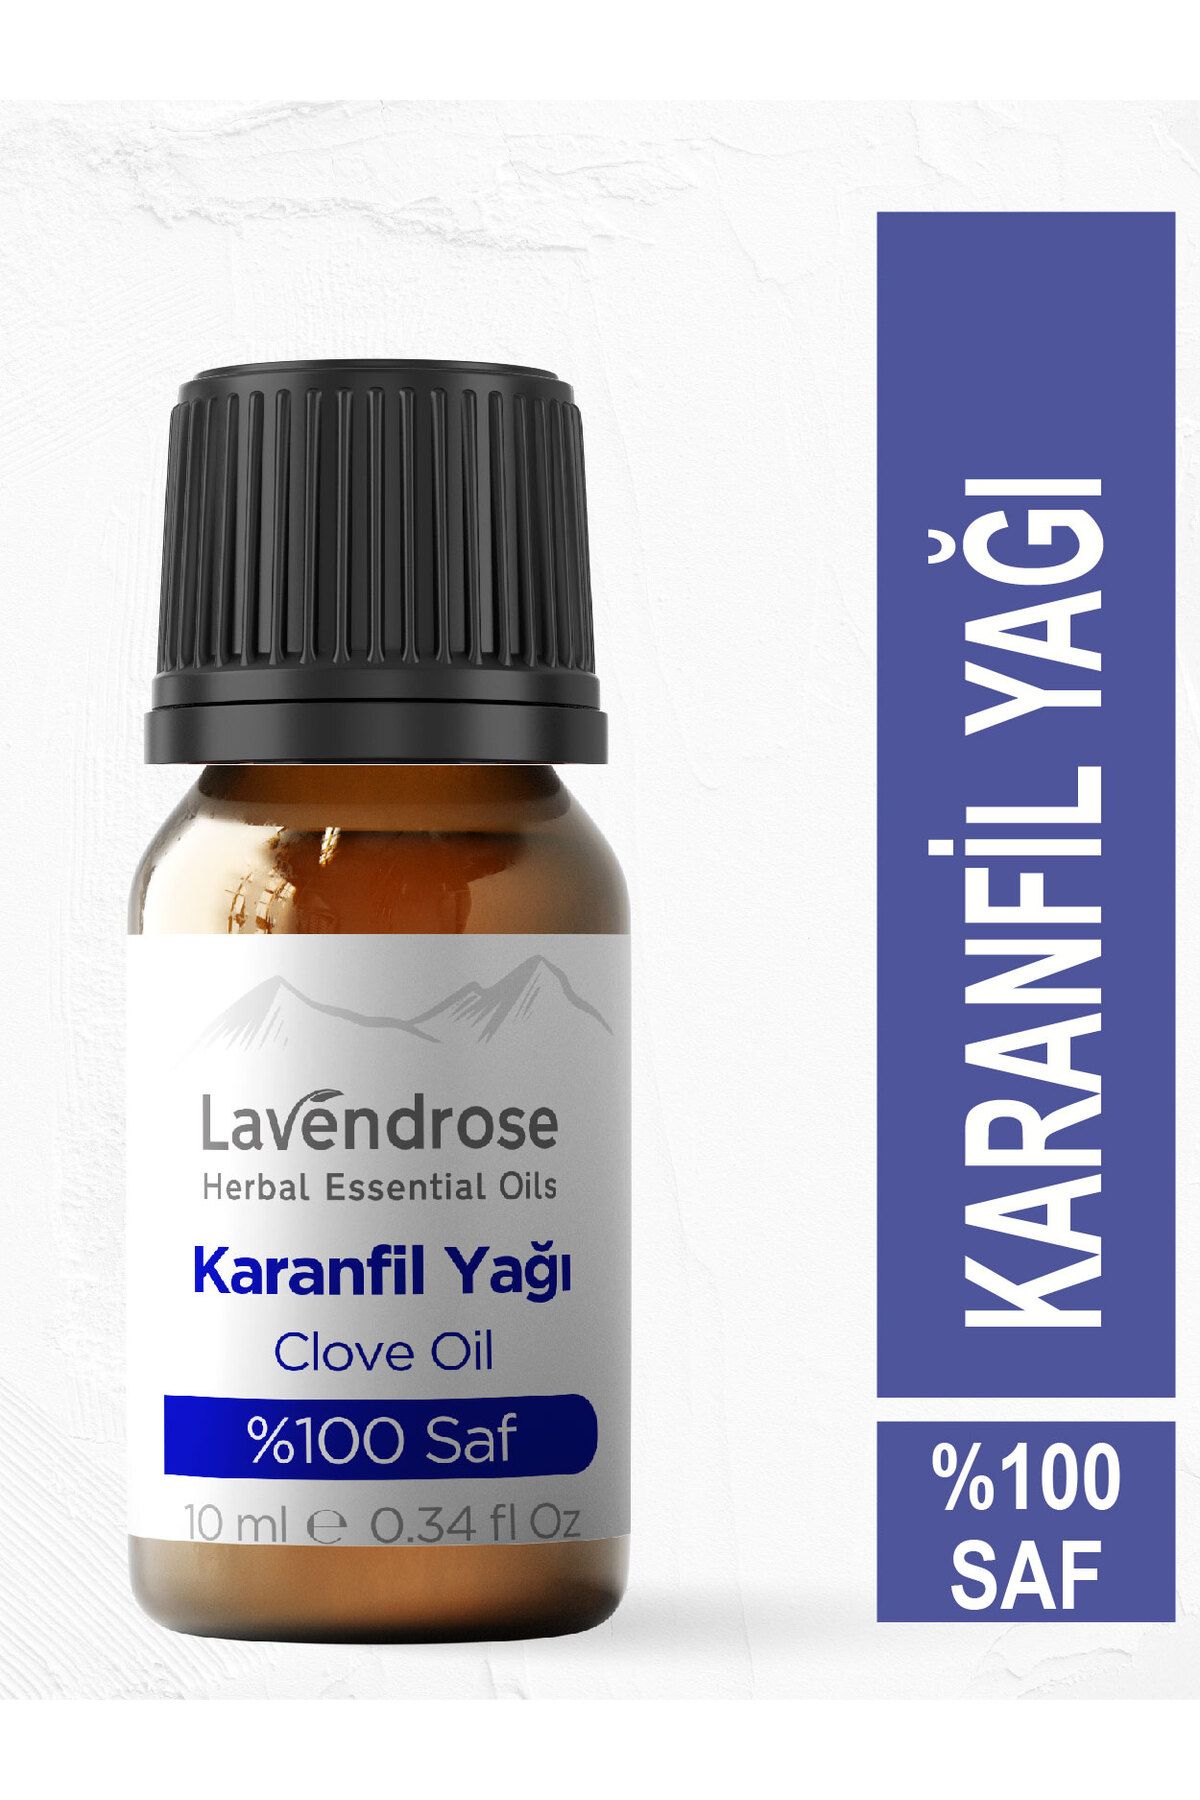 Lavendrose Karanfil Yağı %100 Saf- Bitkisel Aromaterapi Karanfil Uçuçu Yağı 10ml- Clove Oil Difizöre Uygun